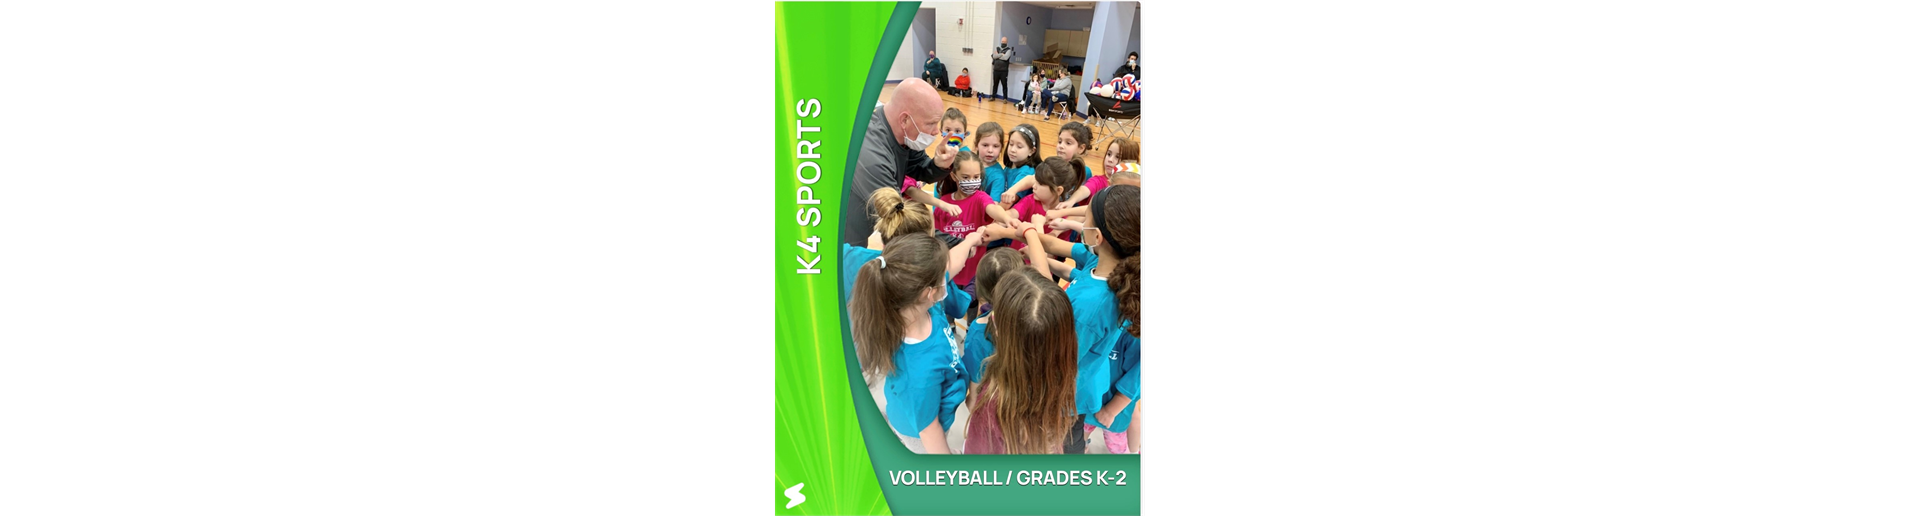 K4 Volleyball Class (Grades K-4)